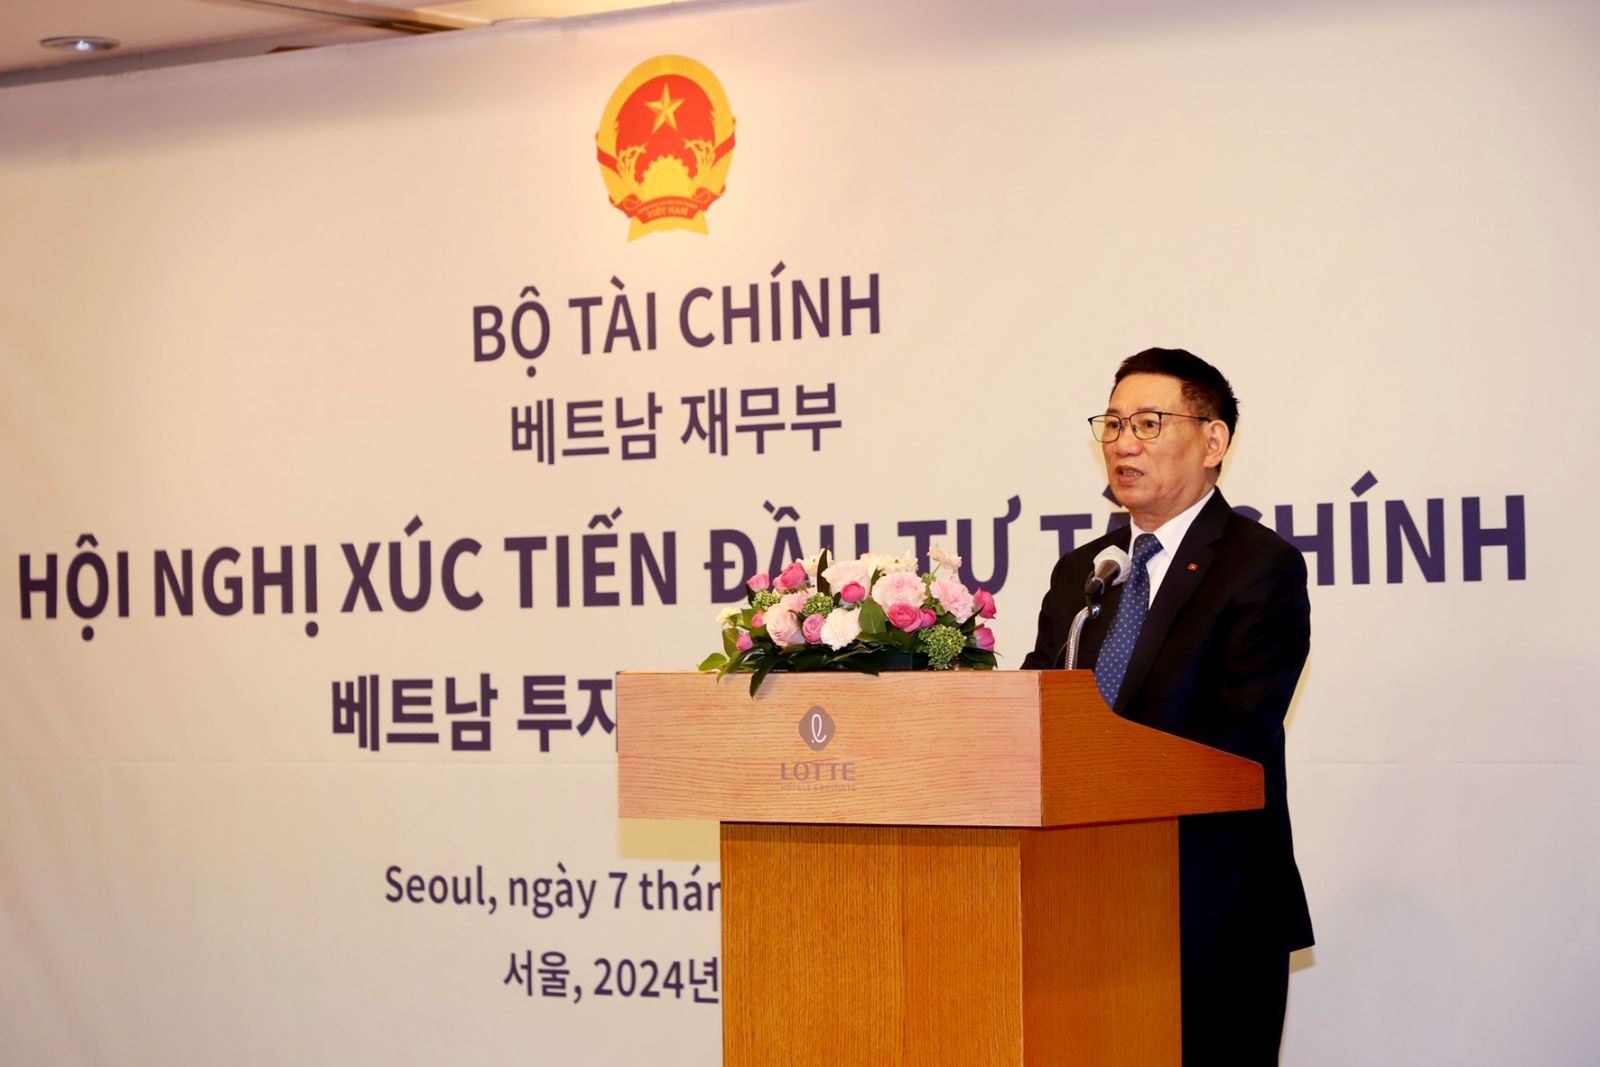 Bộ trưởng Bộ Tài chính đã t dự và chủ trì Hội nghị Xúc tiến Đầu tư tại Hàn Quốc với chủ đề “Việt Nam - Điểm đến đầu tư”